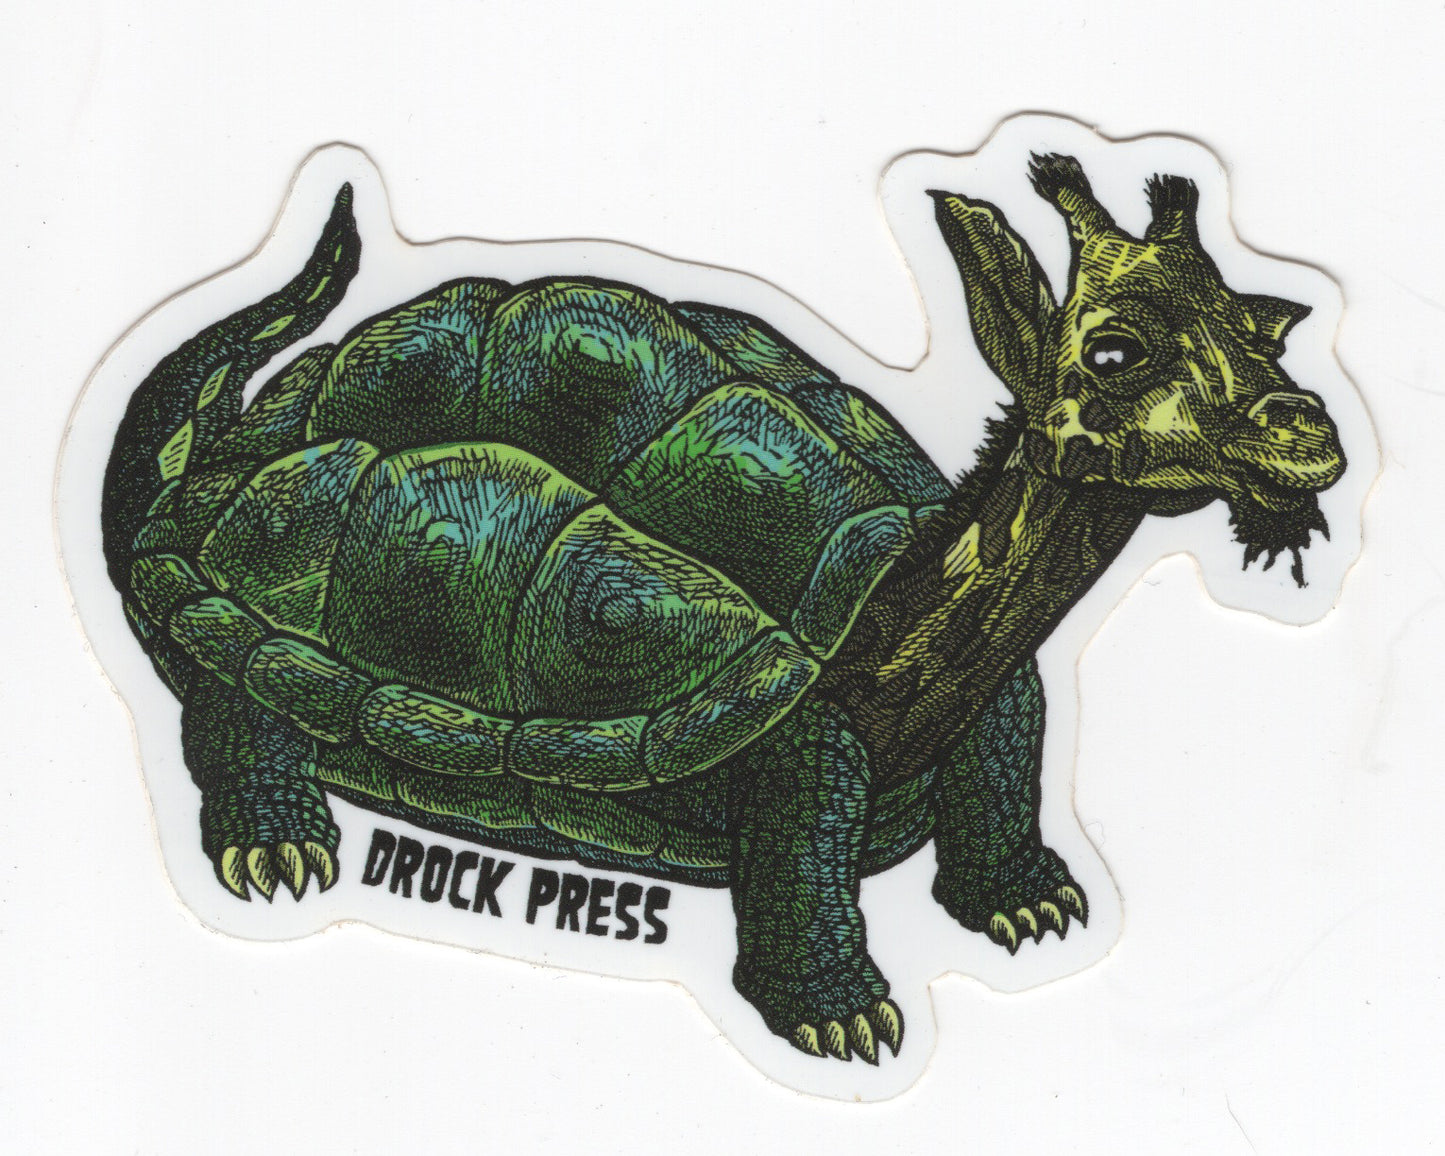 dRock Press: Stickers